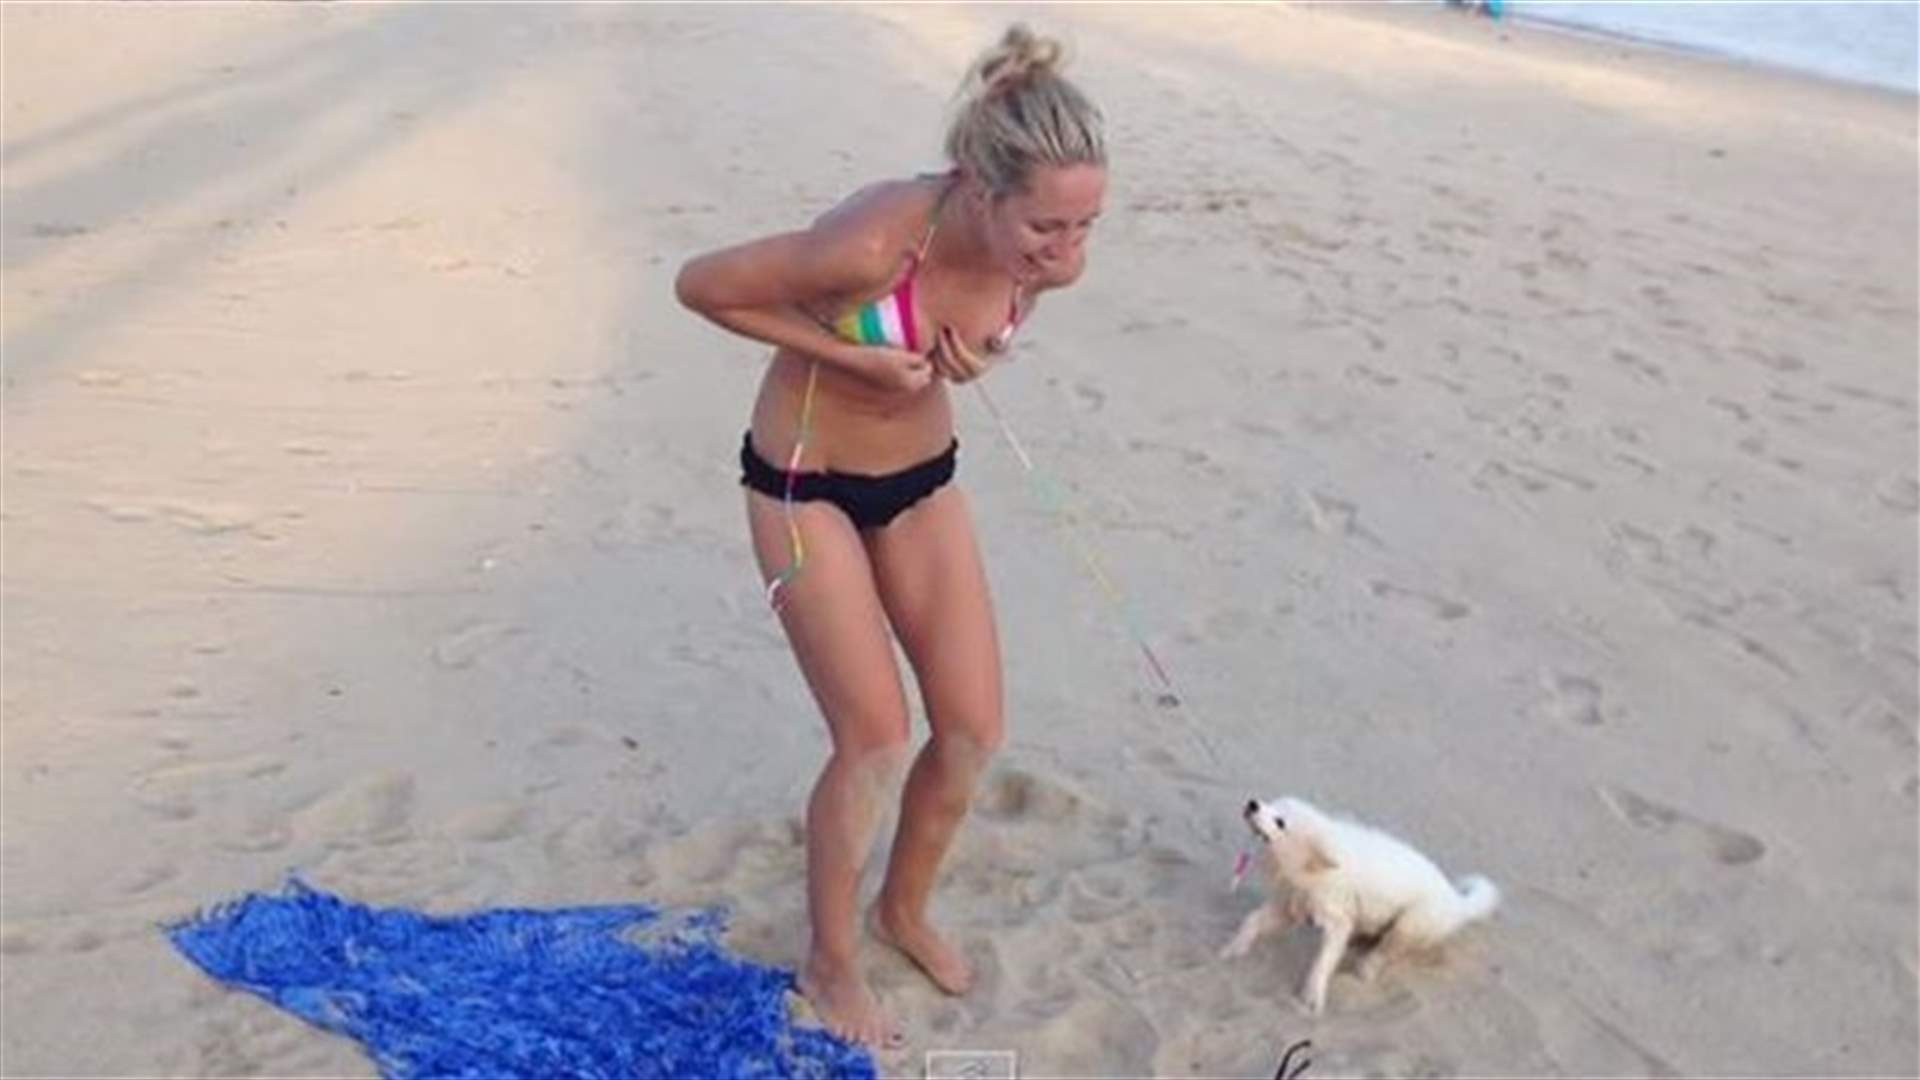 بالفيديو: كلب يحاول تعرية شابة بلباس البحر... هل نجح؟